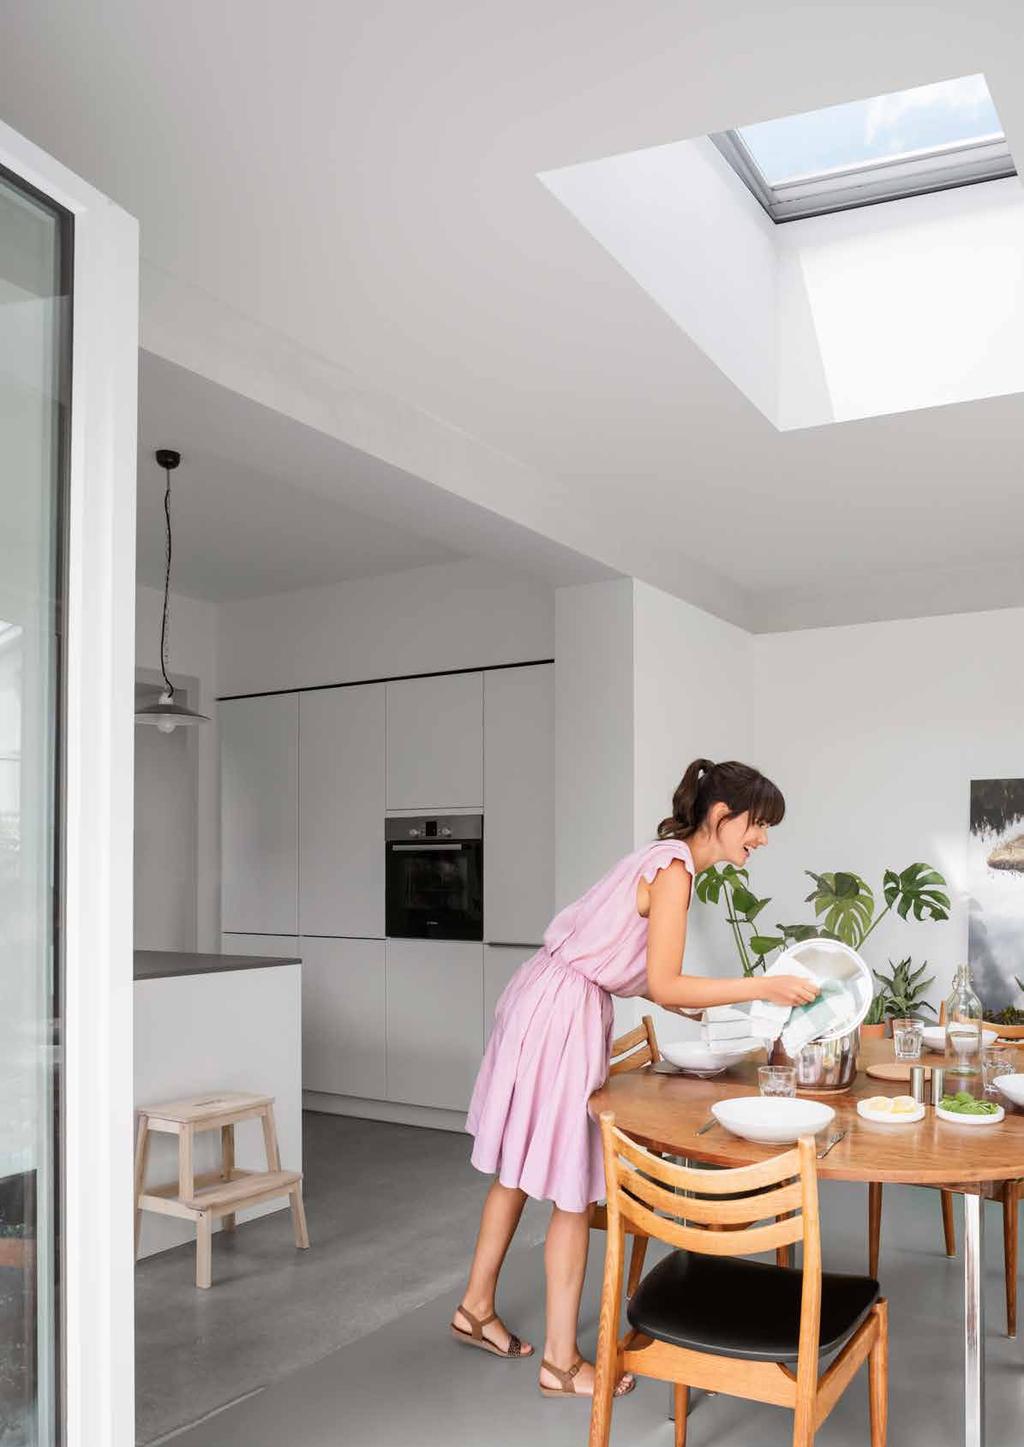 Tipy pro kuchyni: Kuchyňská linka je nejfrekventovanější pracovní plochou v domácnosti.